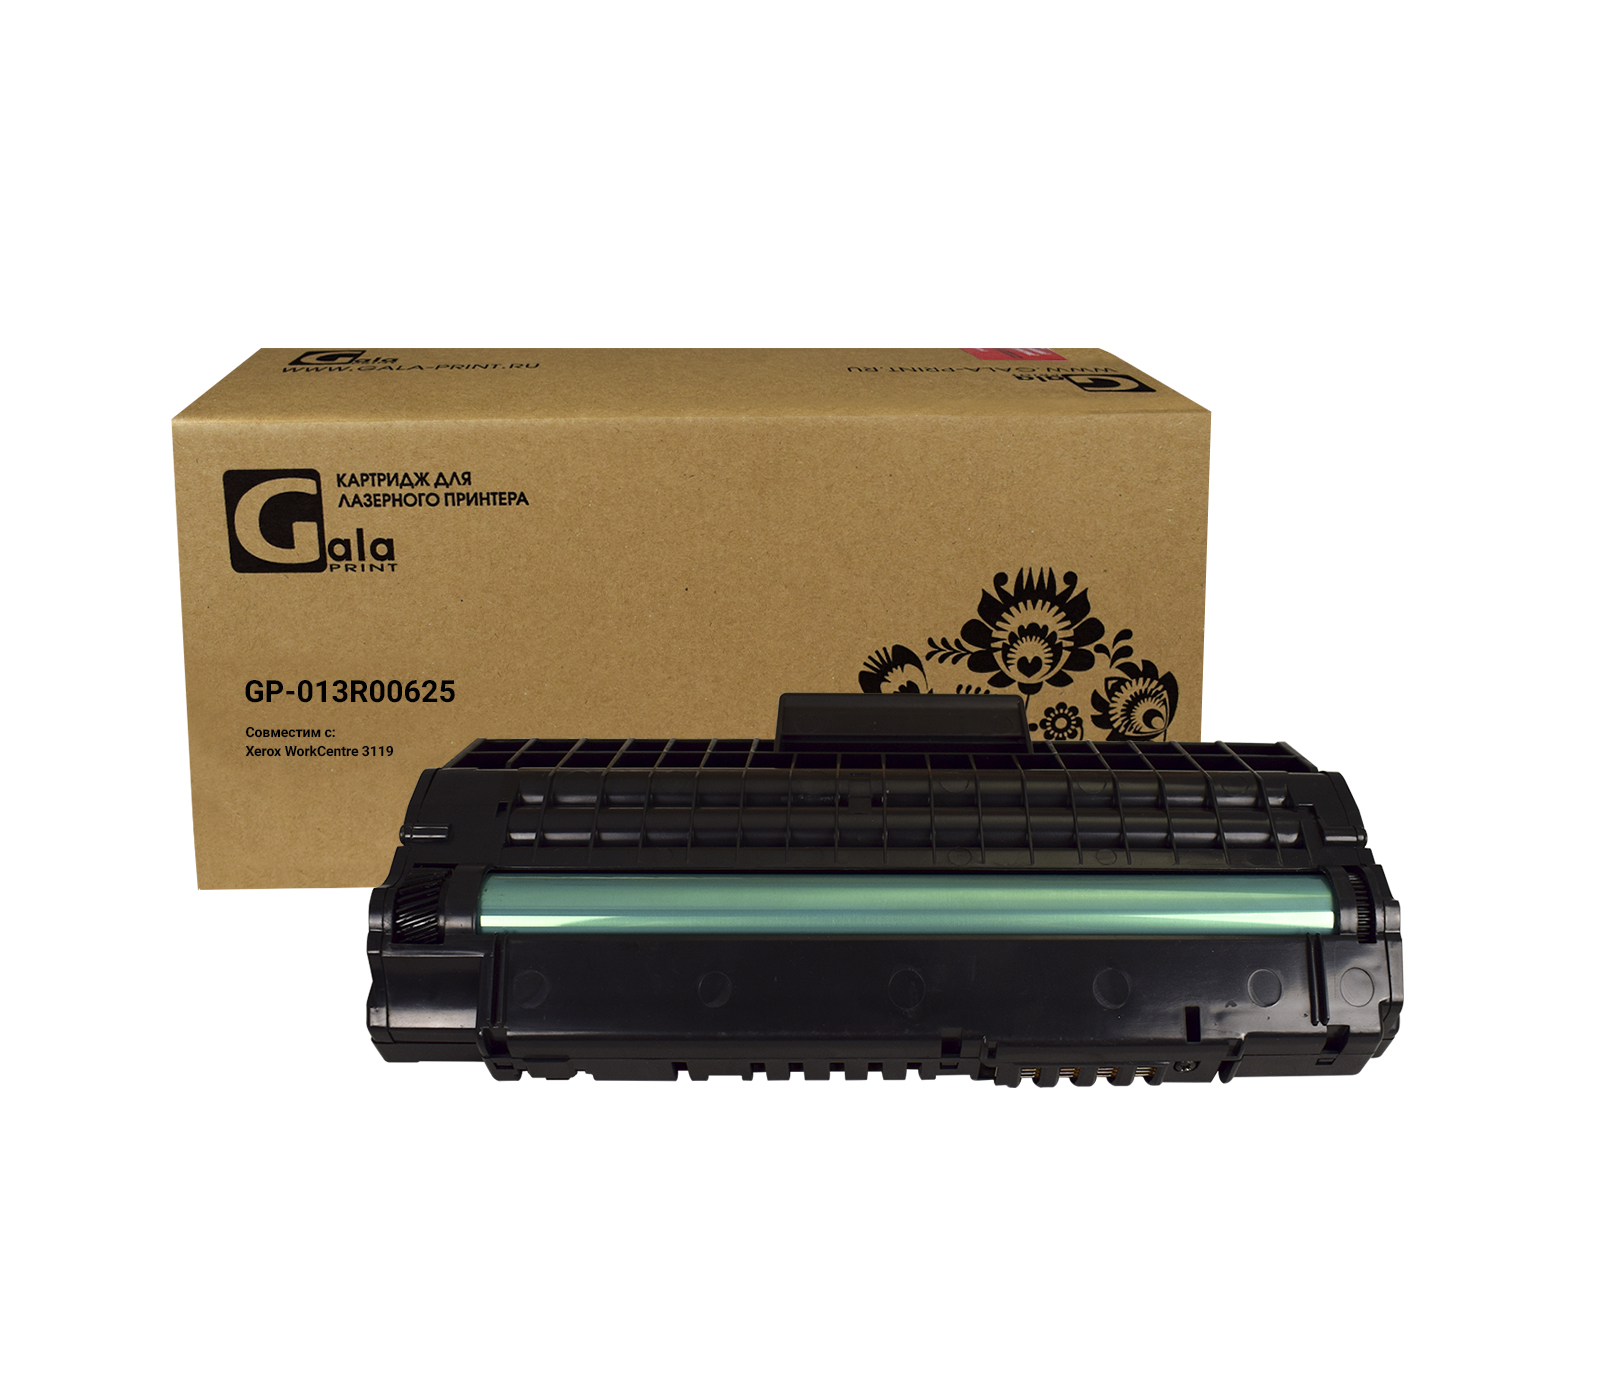 Картридж GP-013R00625 для принтеров Rank Xerox WC 3119 3000 копий GalaPrint